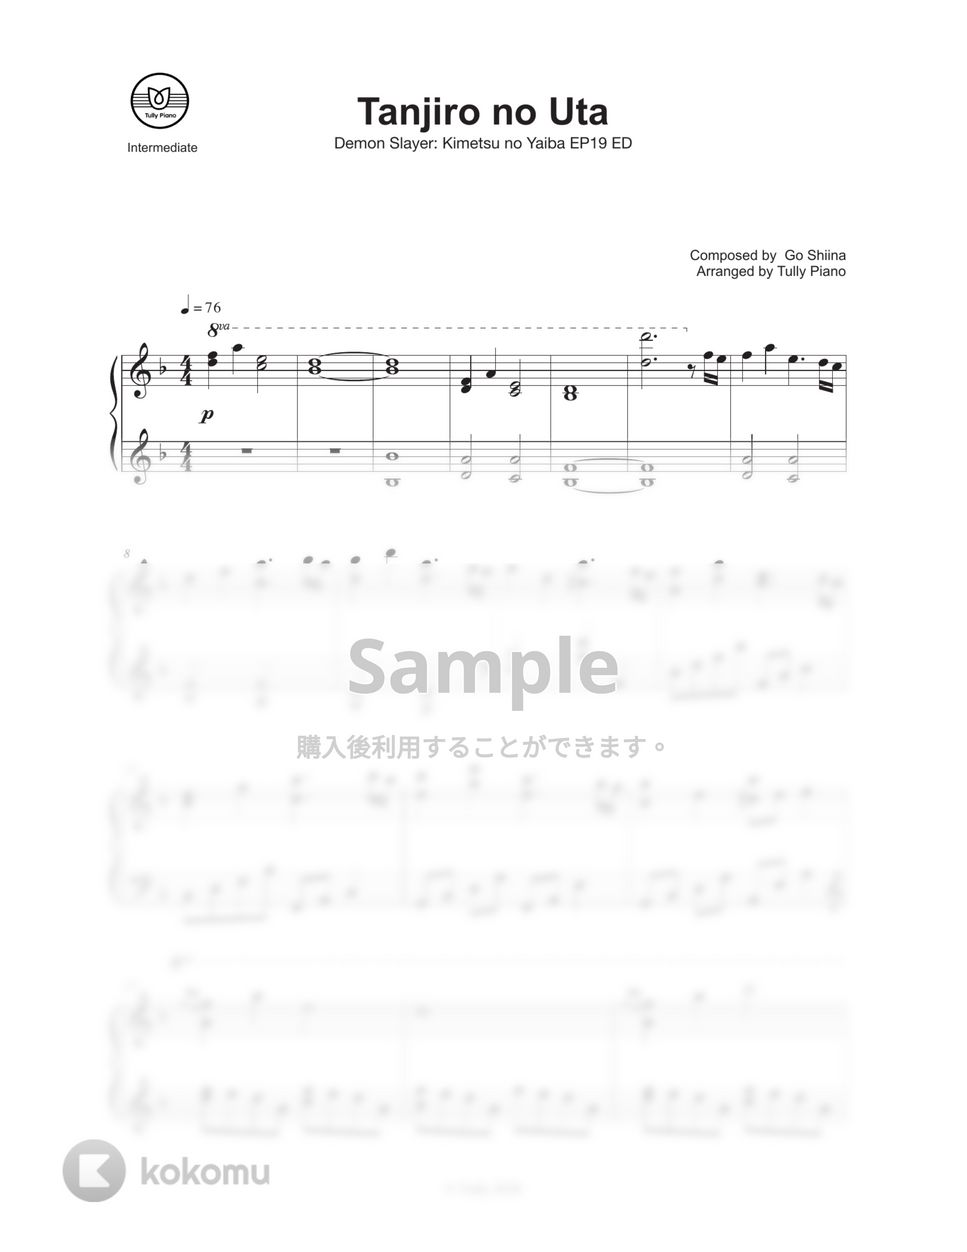 鬼滅の刃 - 竈門炭治郎のうた (中級楽譜) by Tully Piano